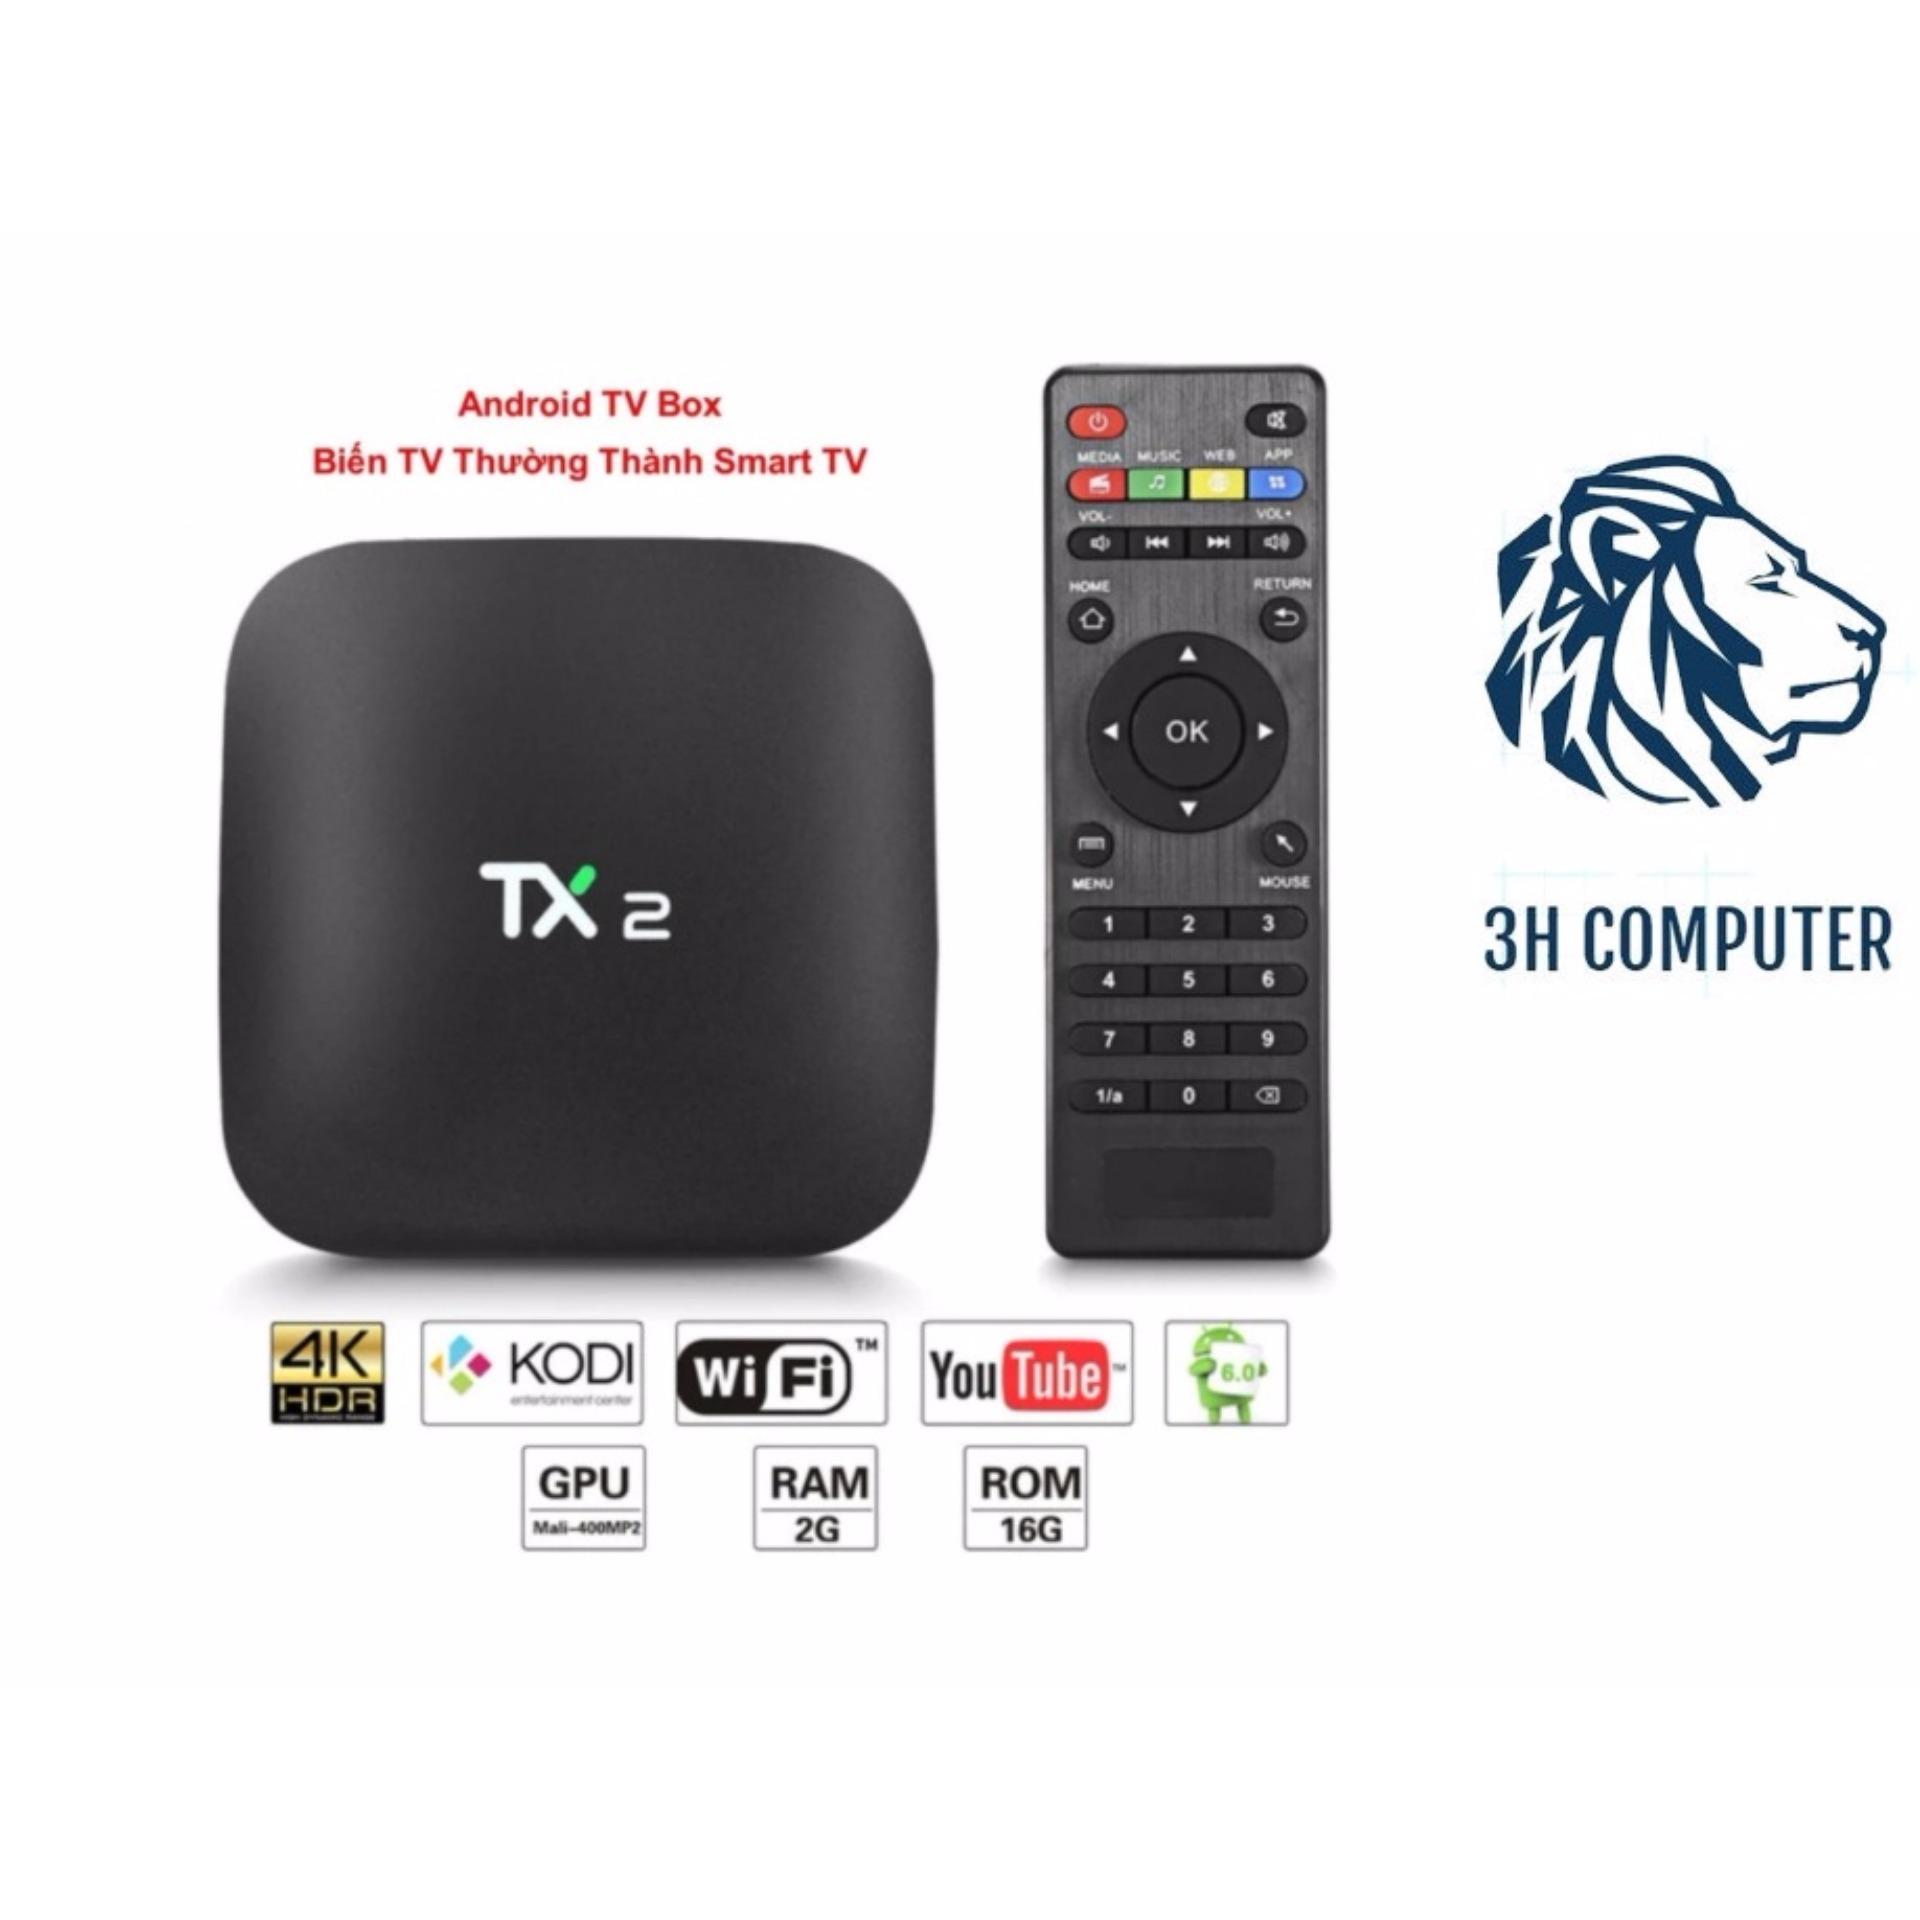 TV Android Box TX2 mini - Biến TV Thường Thành Smart TV